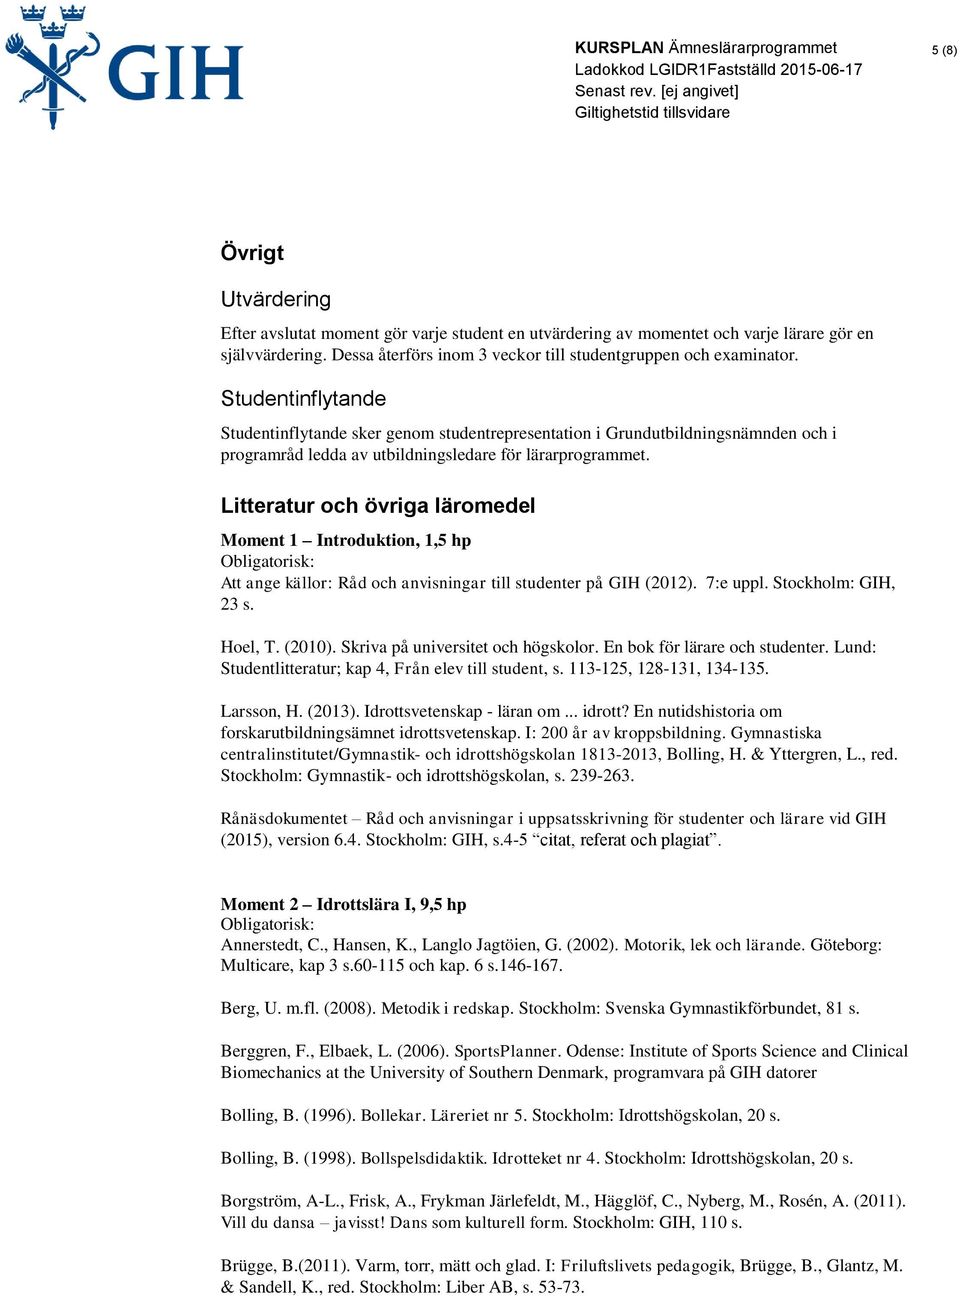 Litteratur och övriga läromedel Moment 1 Introduktion, 1,5 hp Att ange källor: Råd och anvisningar till studenter på GIH (2012). 7:e uppl. Stockholm: GIH, 23 s. Hoel, T. (2010).